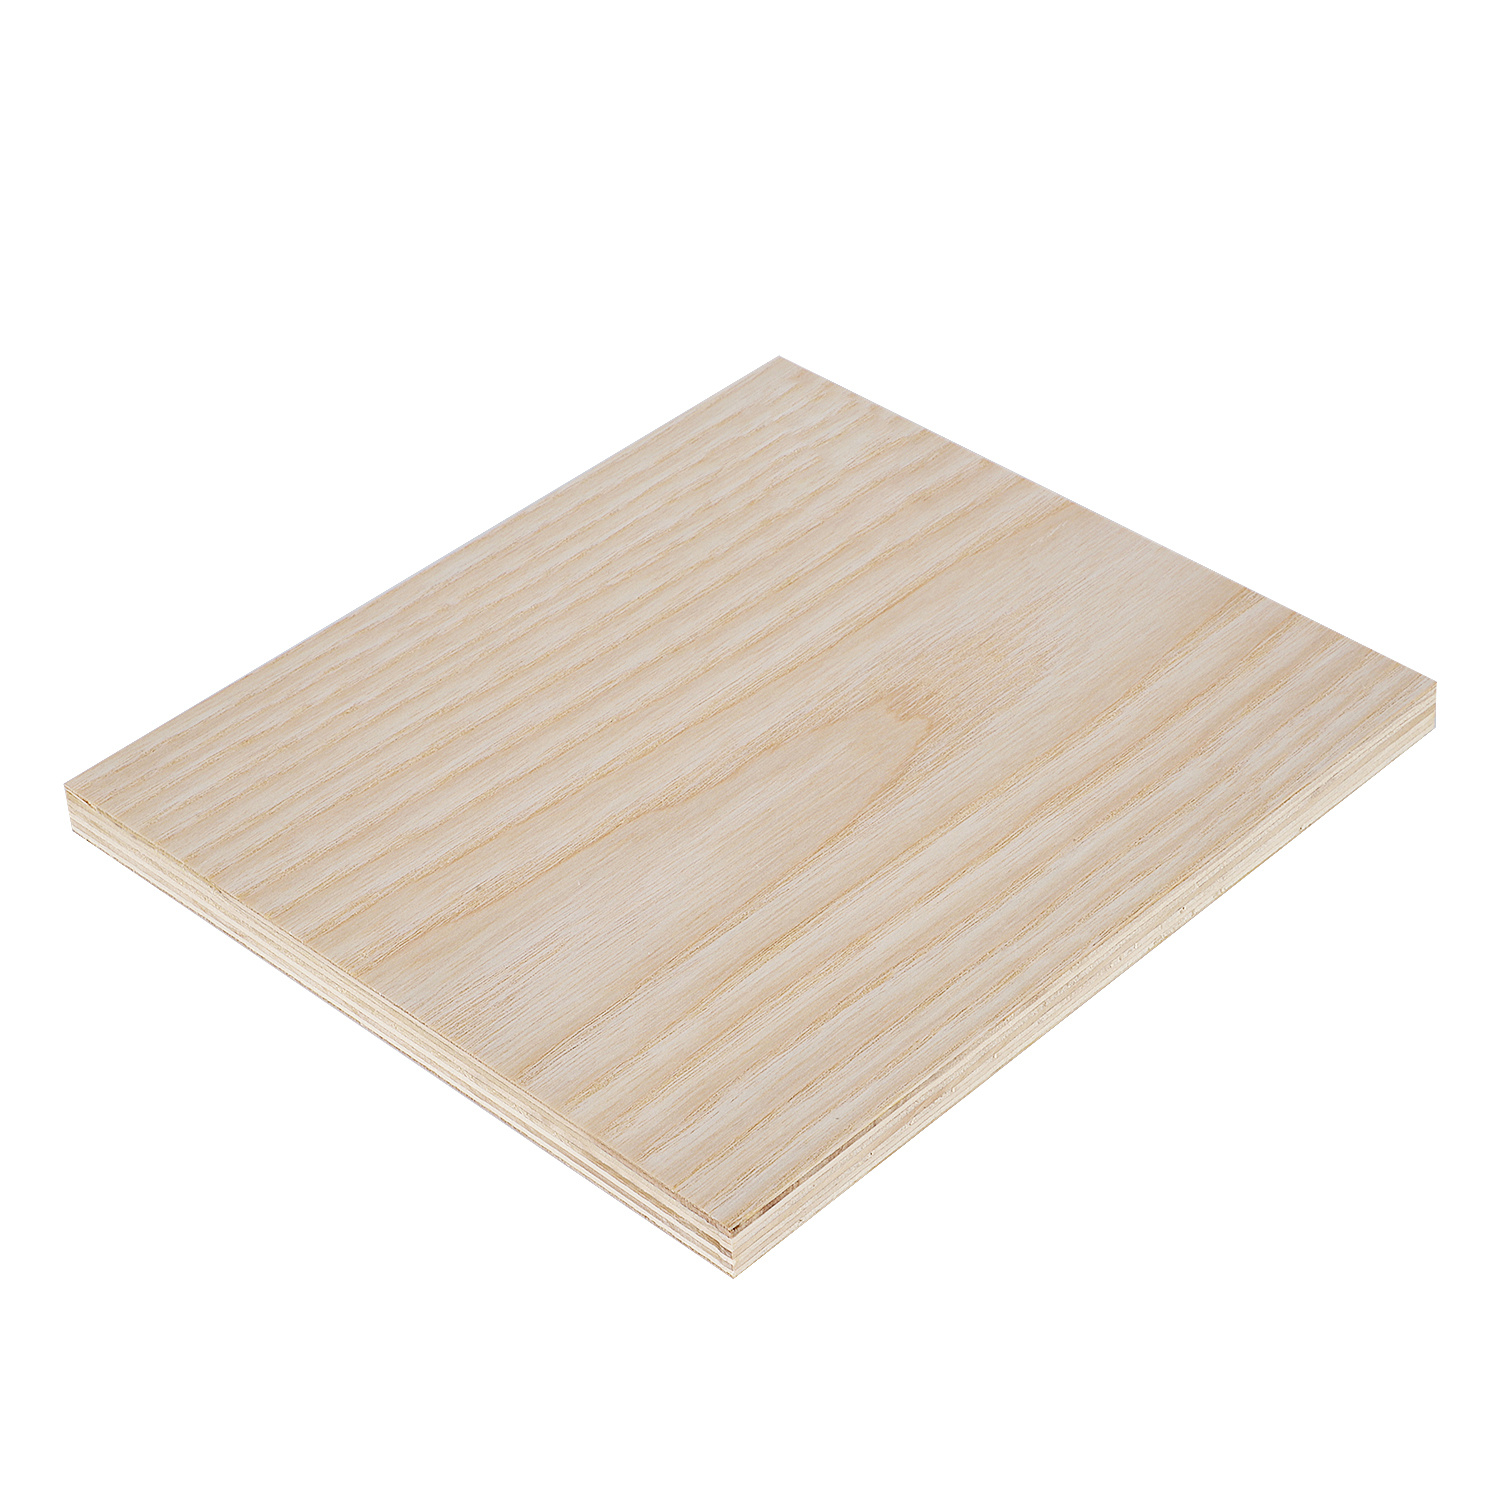 High Quality Oak Plywood Multi Woodgrain Fancy Plywood for Furniture